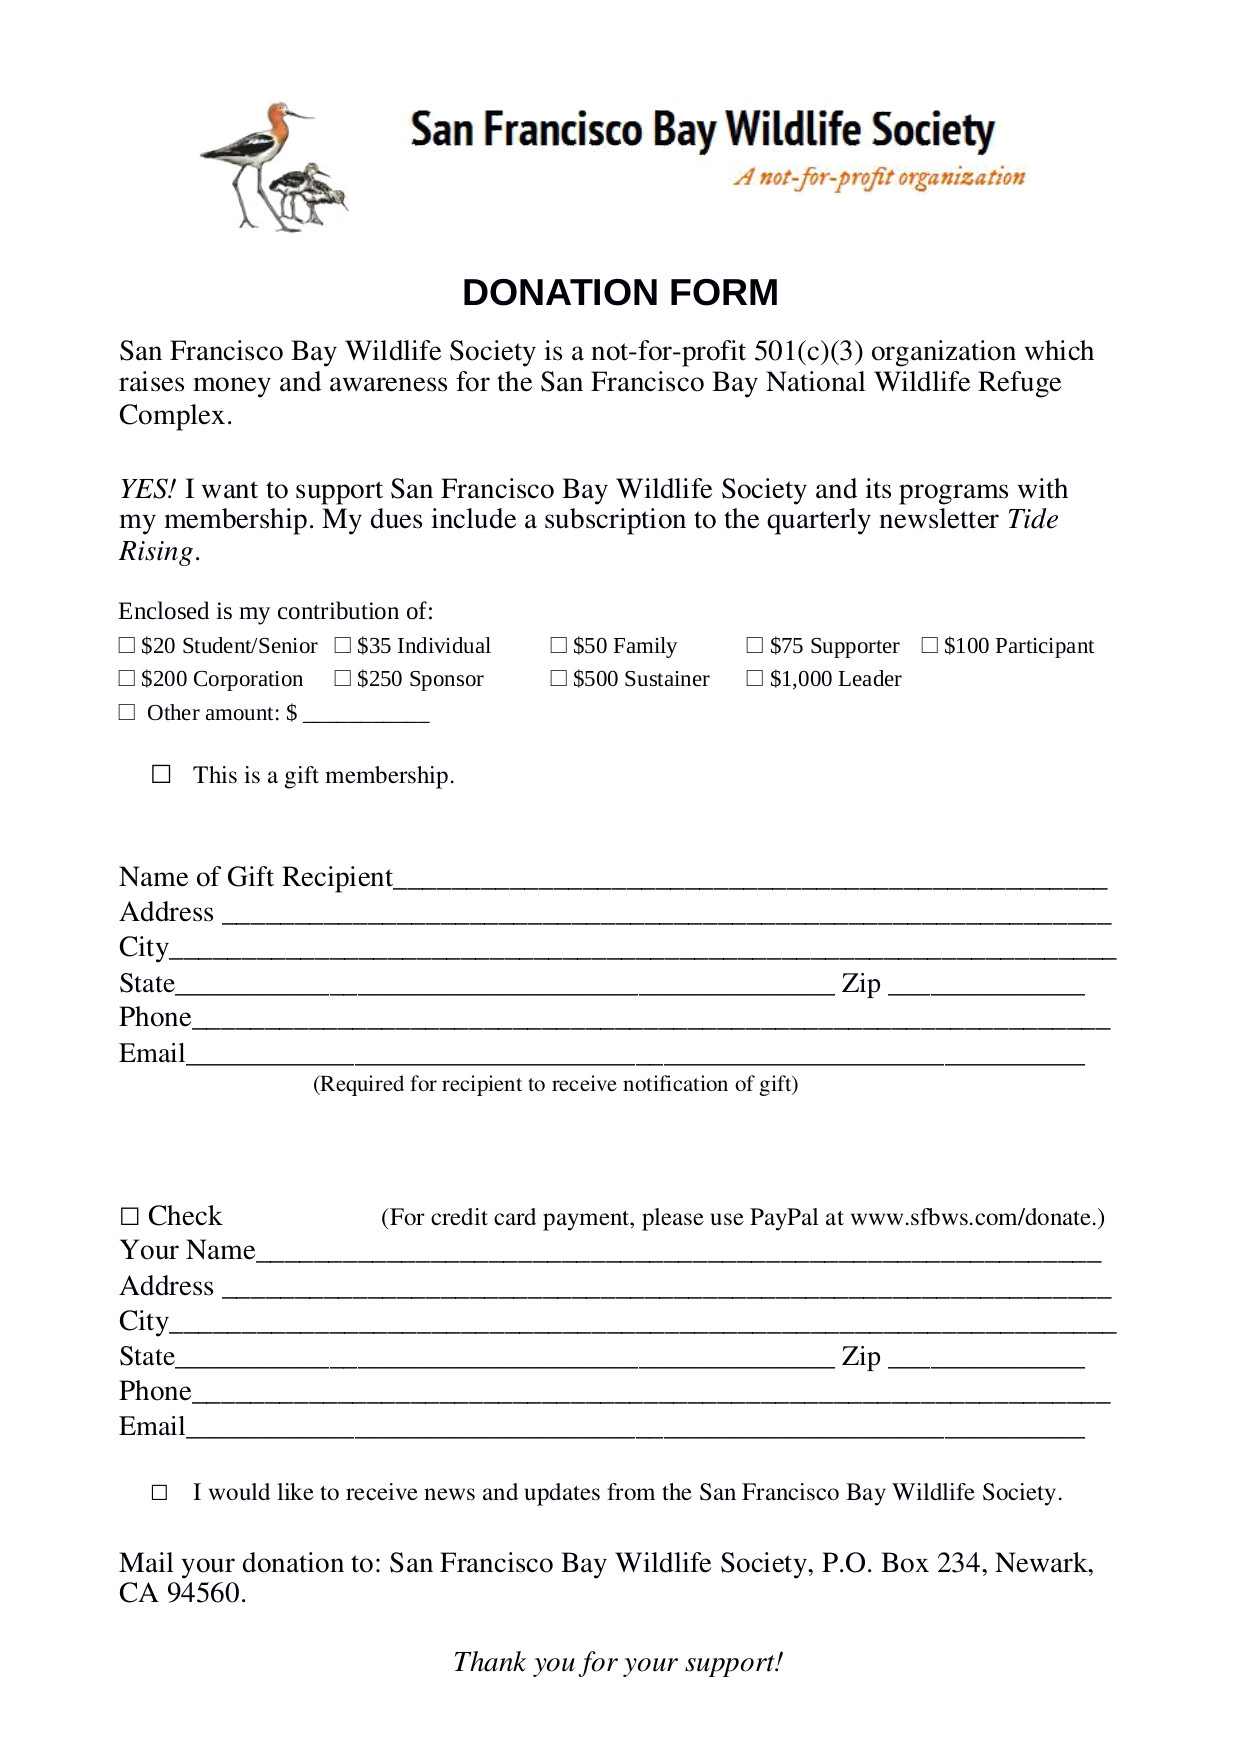 San Francisco Bay Wildlife Society Donation Form